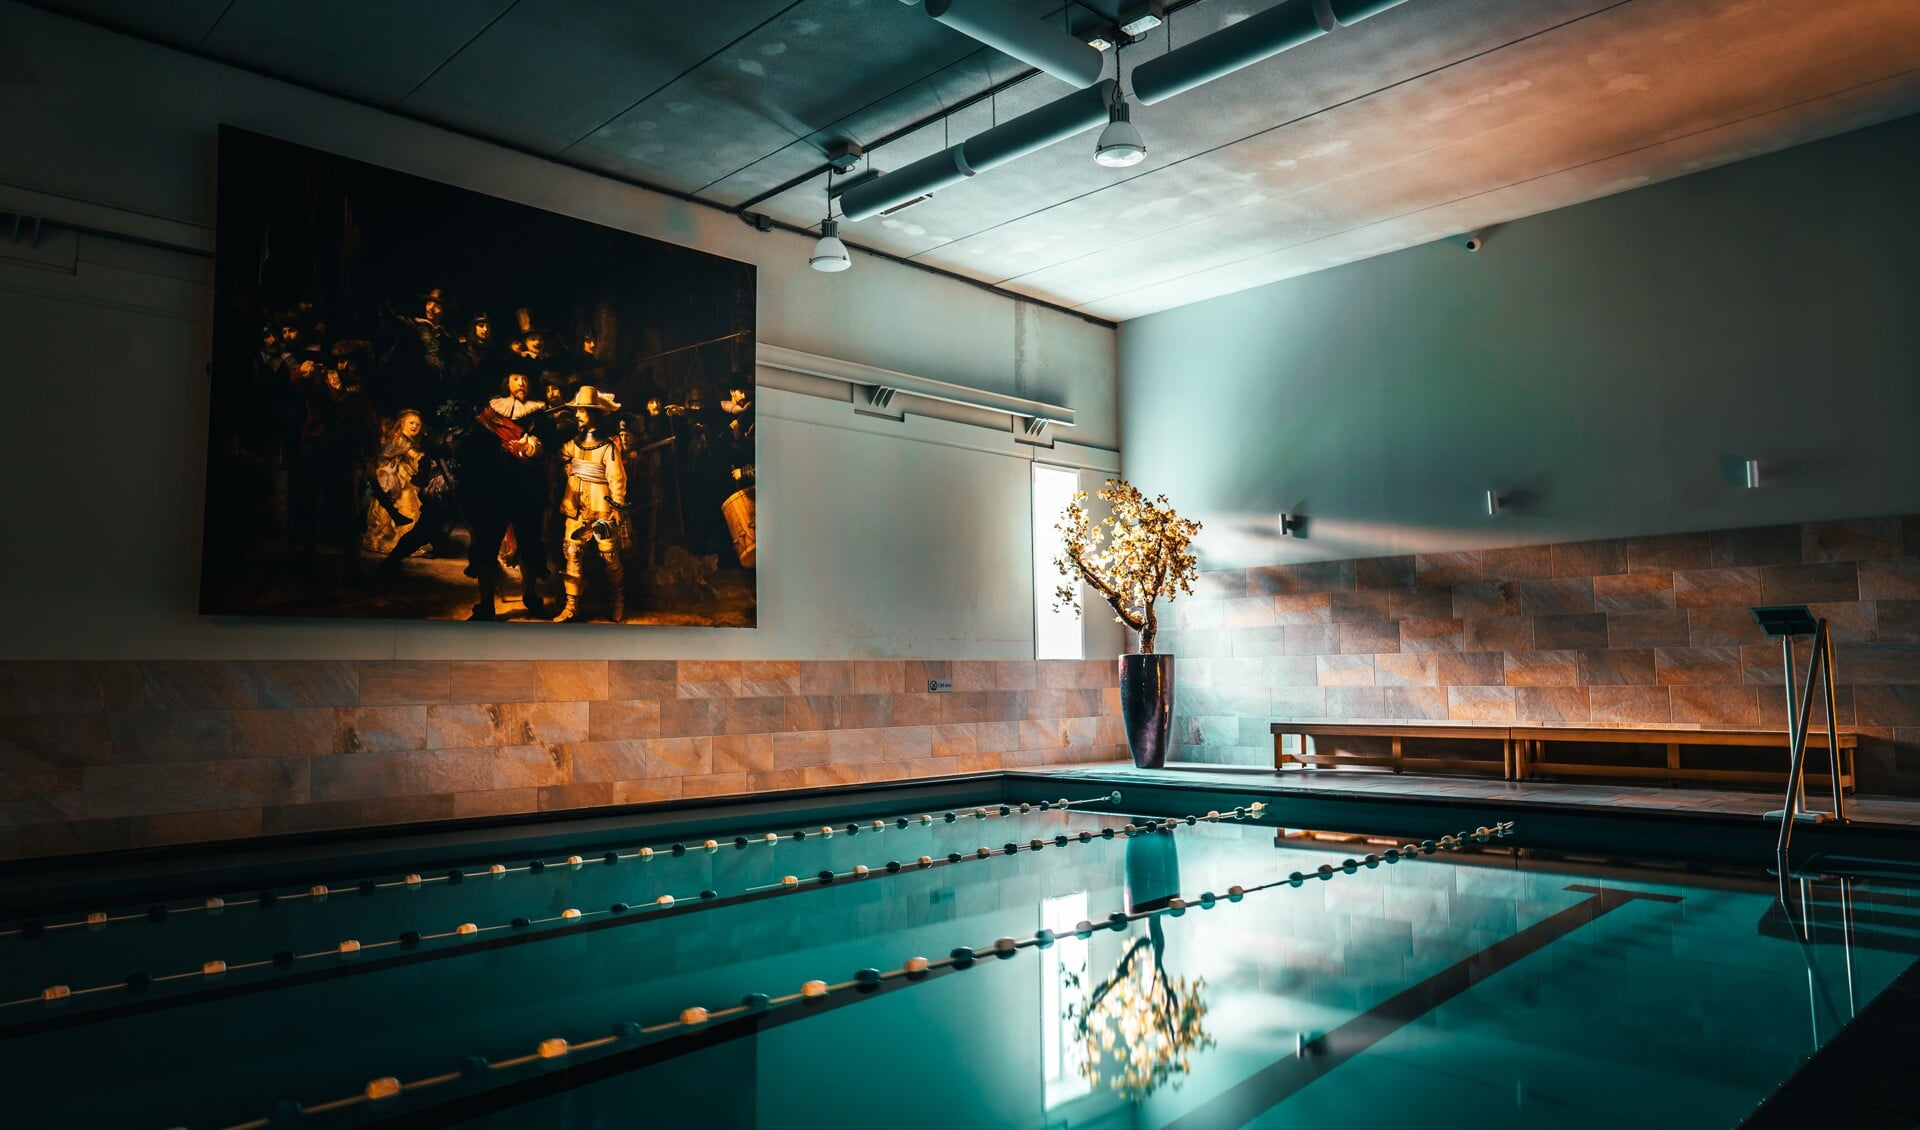 Het nieuwe 25 meter bad is een extra toevoeging voor de leden van de fitnessclub, maar gaat ook dienen als zwemschool.